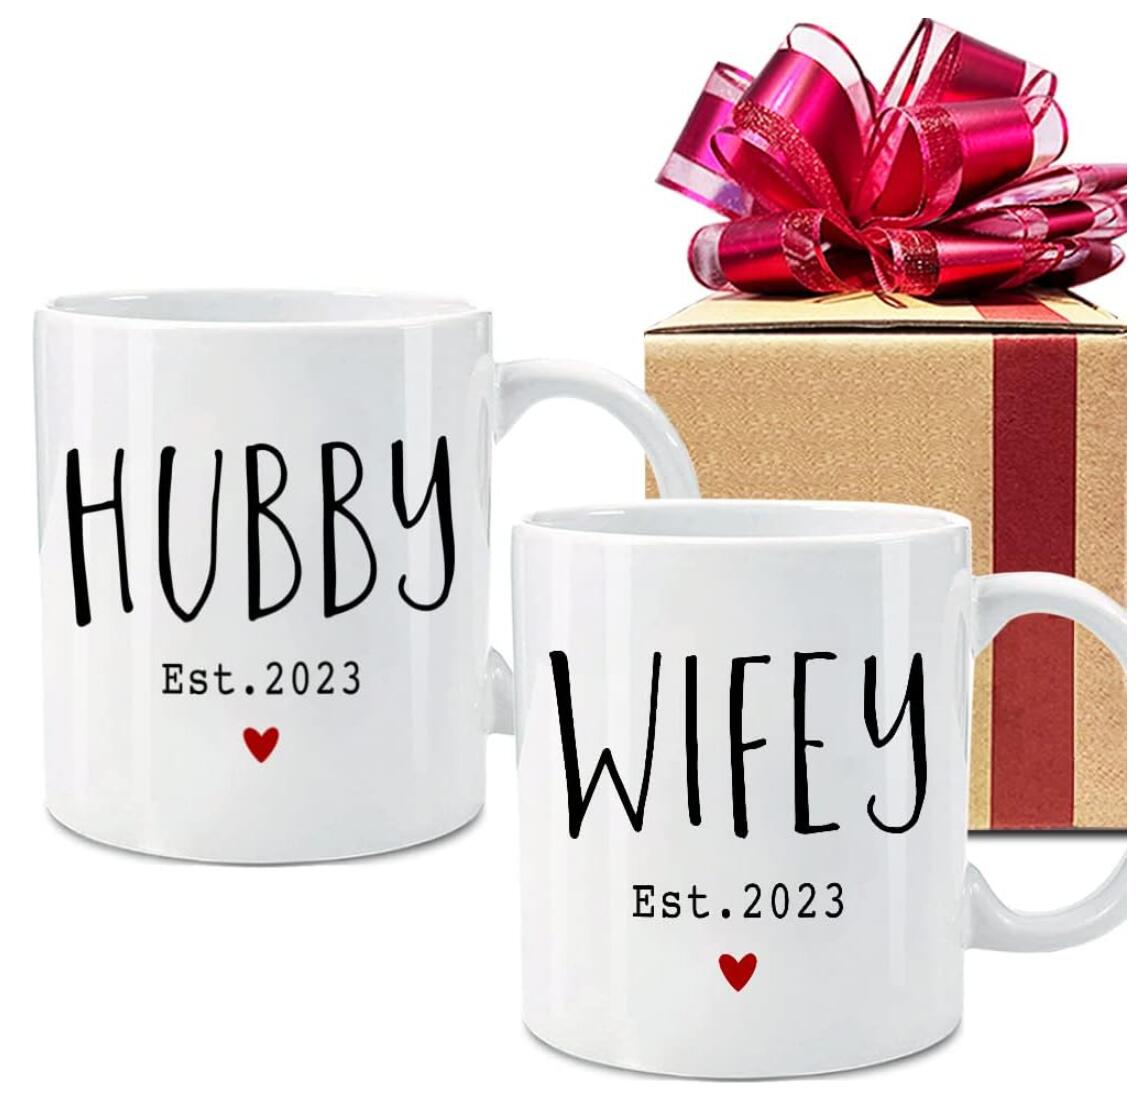 Hubby Wifey Est 2023 Coffee Mugs Wedding Gift Cups